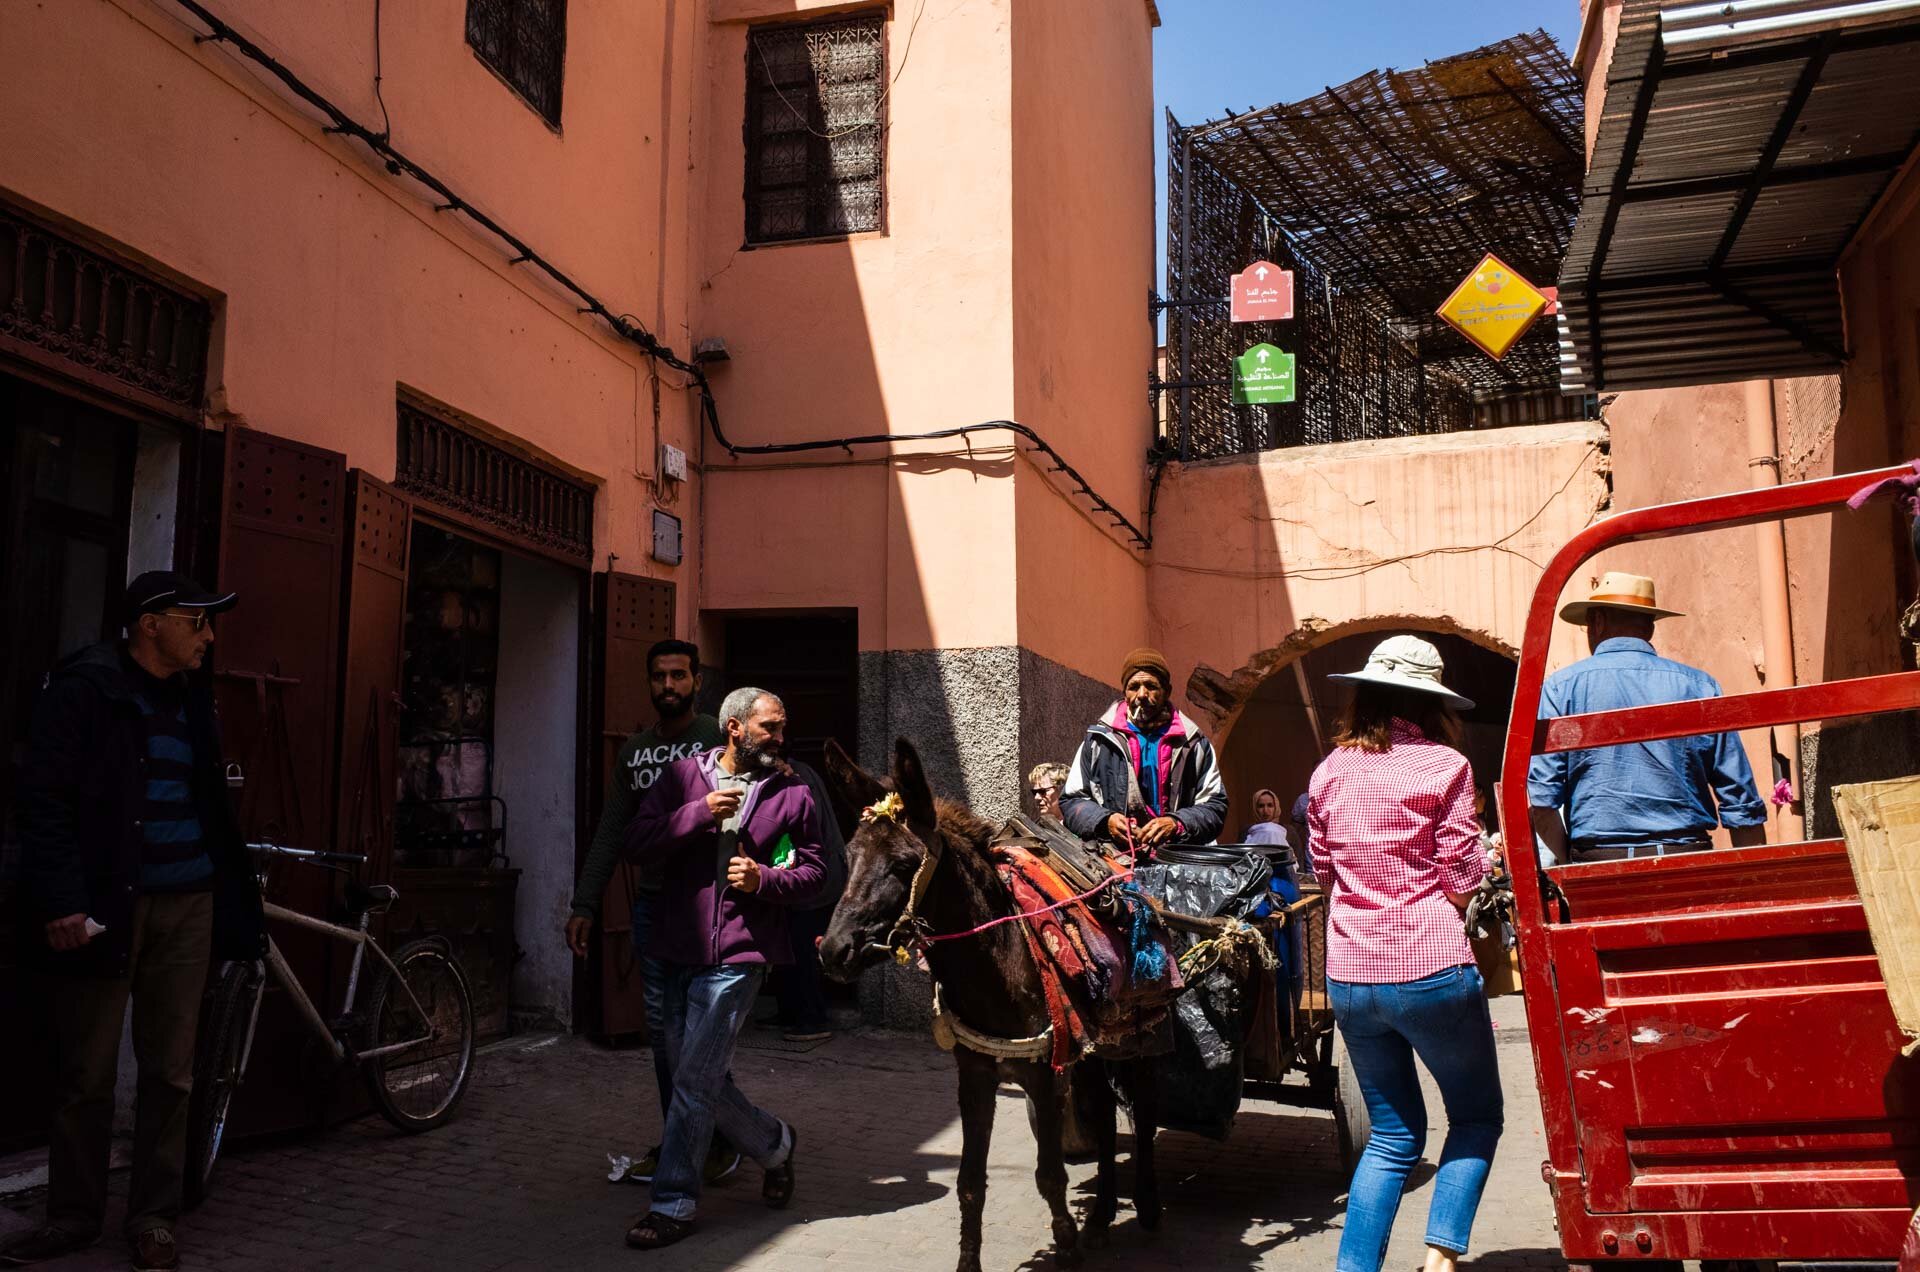 Marocco, marocco on the road, viaggio in marocco, marrakech, medina, bazar, viaggio di coppia, viaggo in marocco itinerario, marrakech marocco, marrakech riad, marrakech hotel, marrakech cosa vedere, marrakech cosa fare-37.jpg